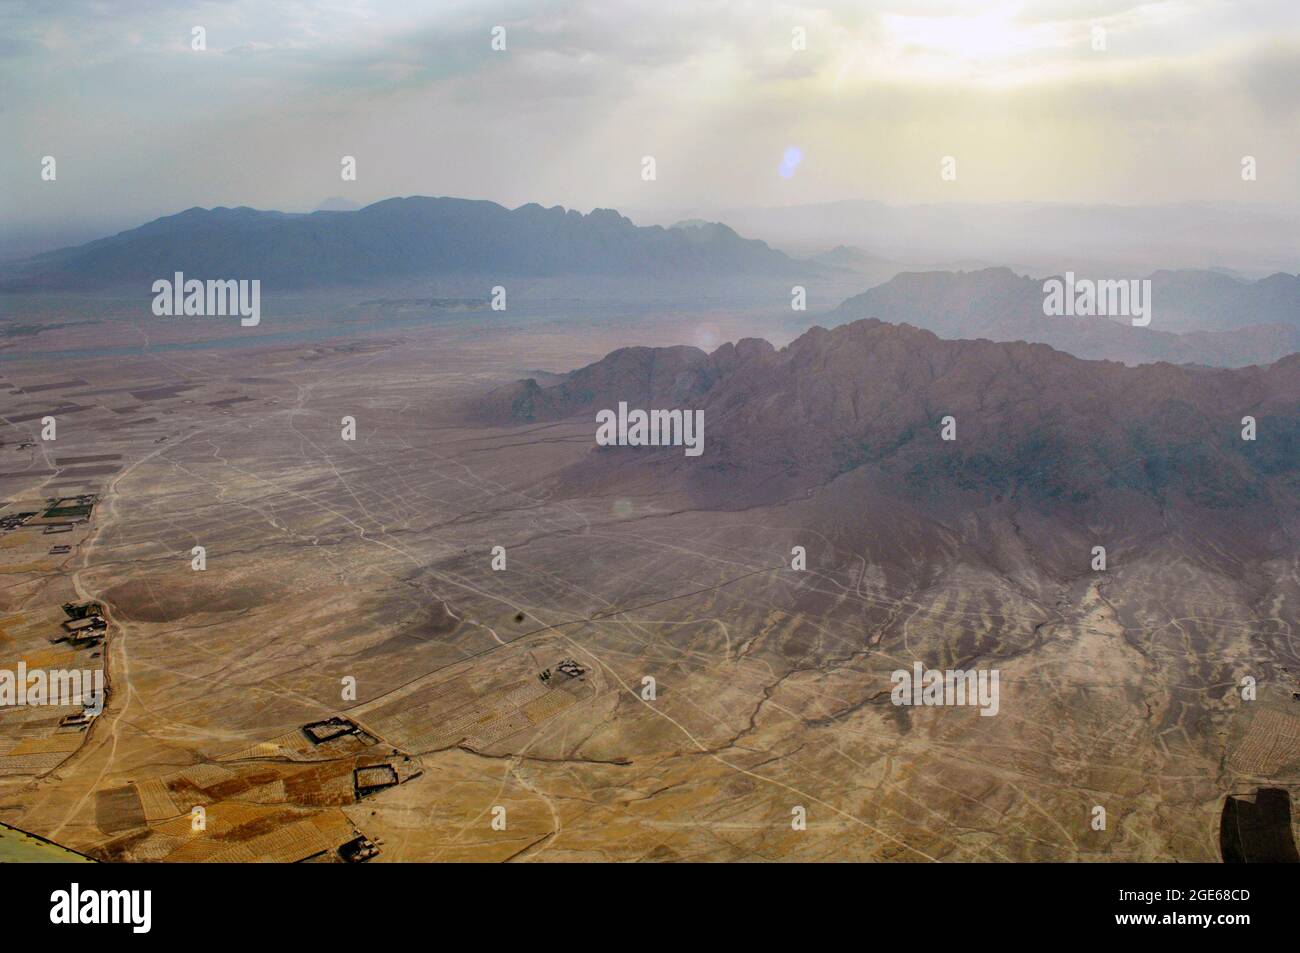 Vue aérienne depuis un hélicoptère Chinook du paysage dans la province de Helmand, en Afghanistan. Banque D'Images